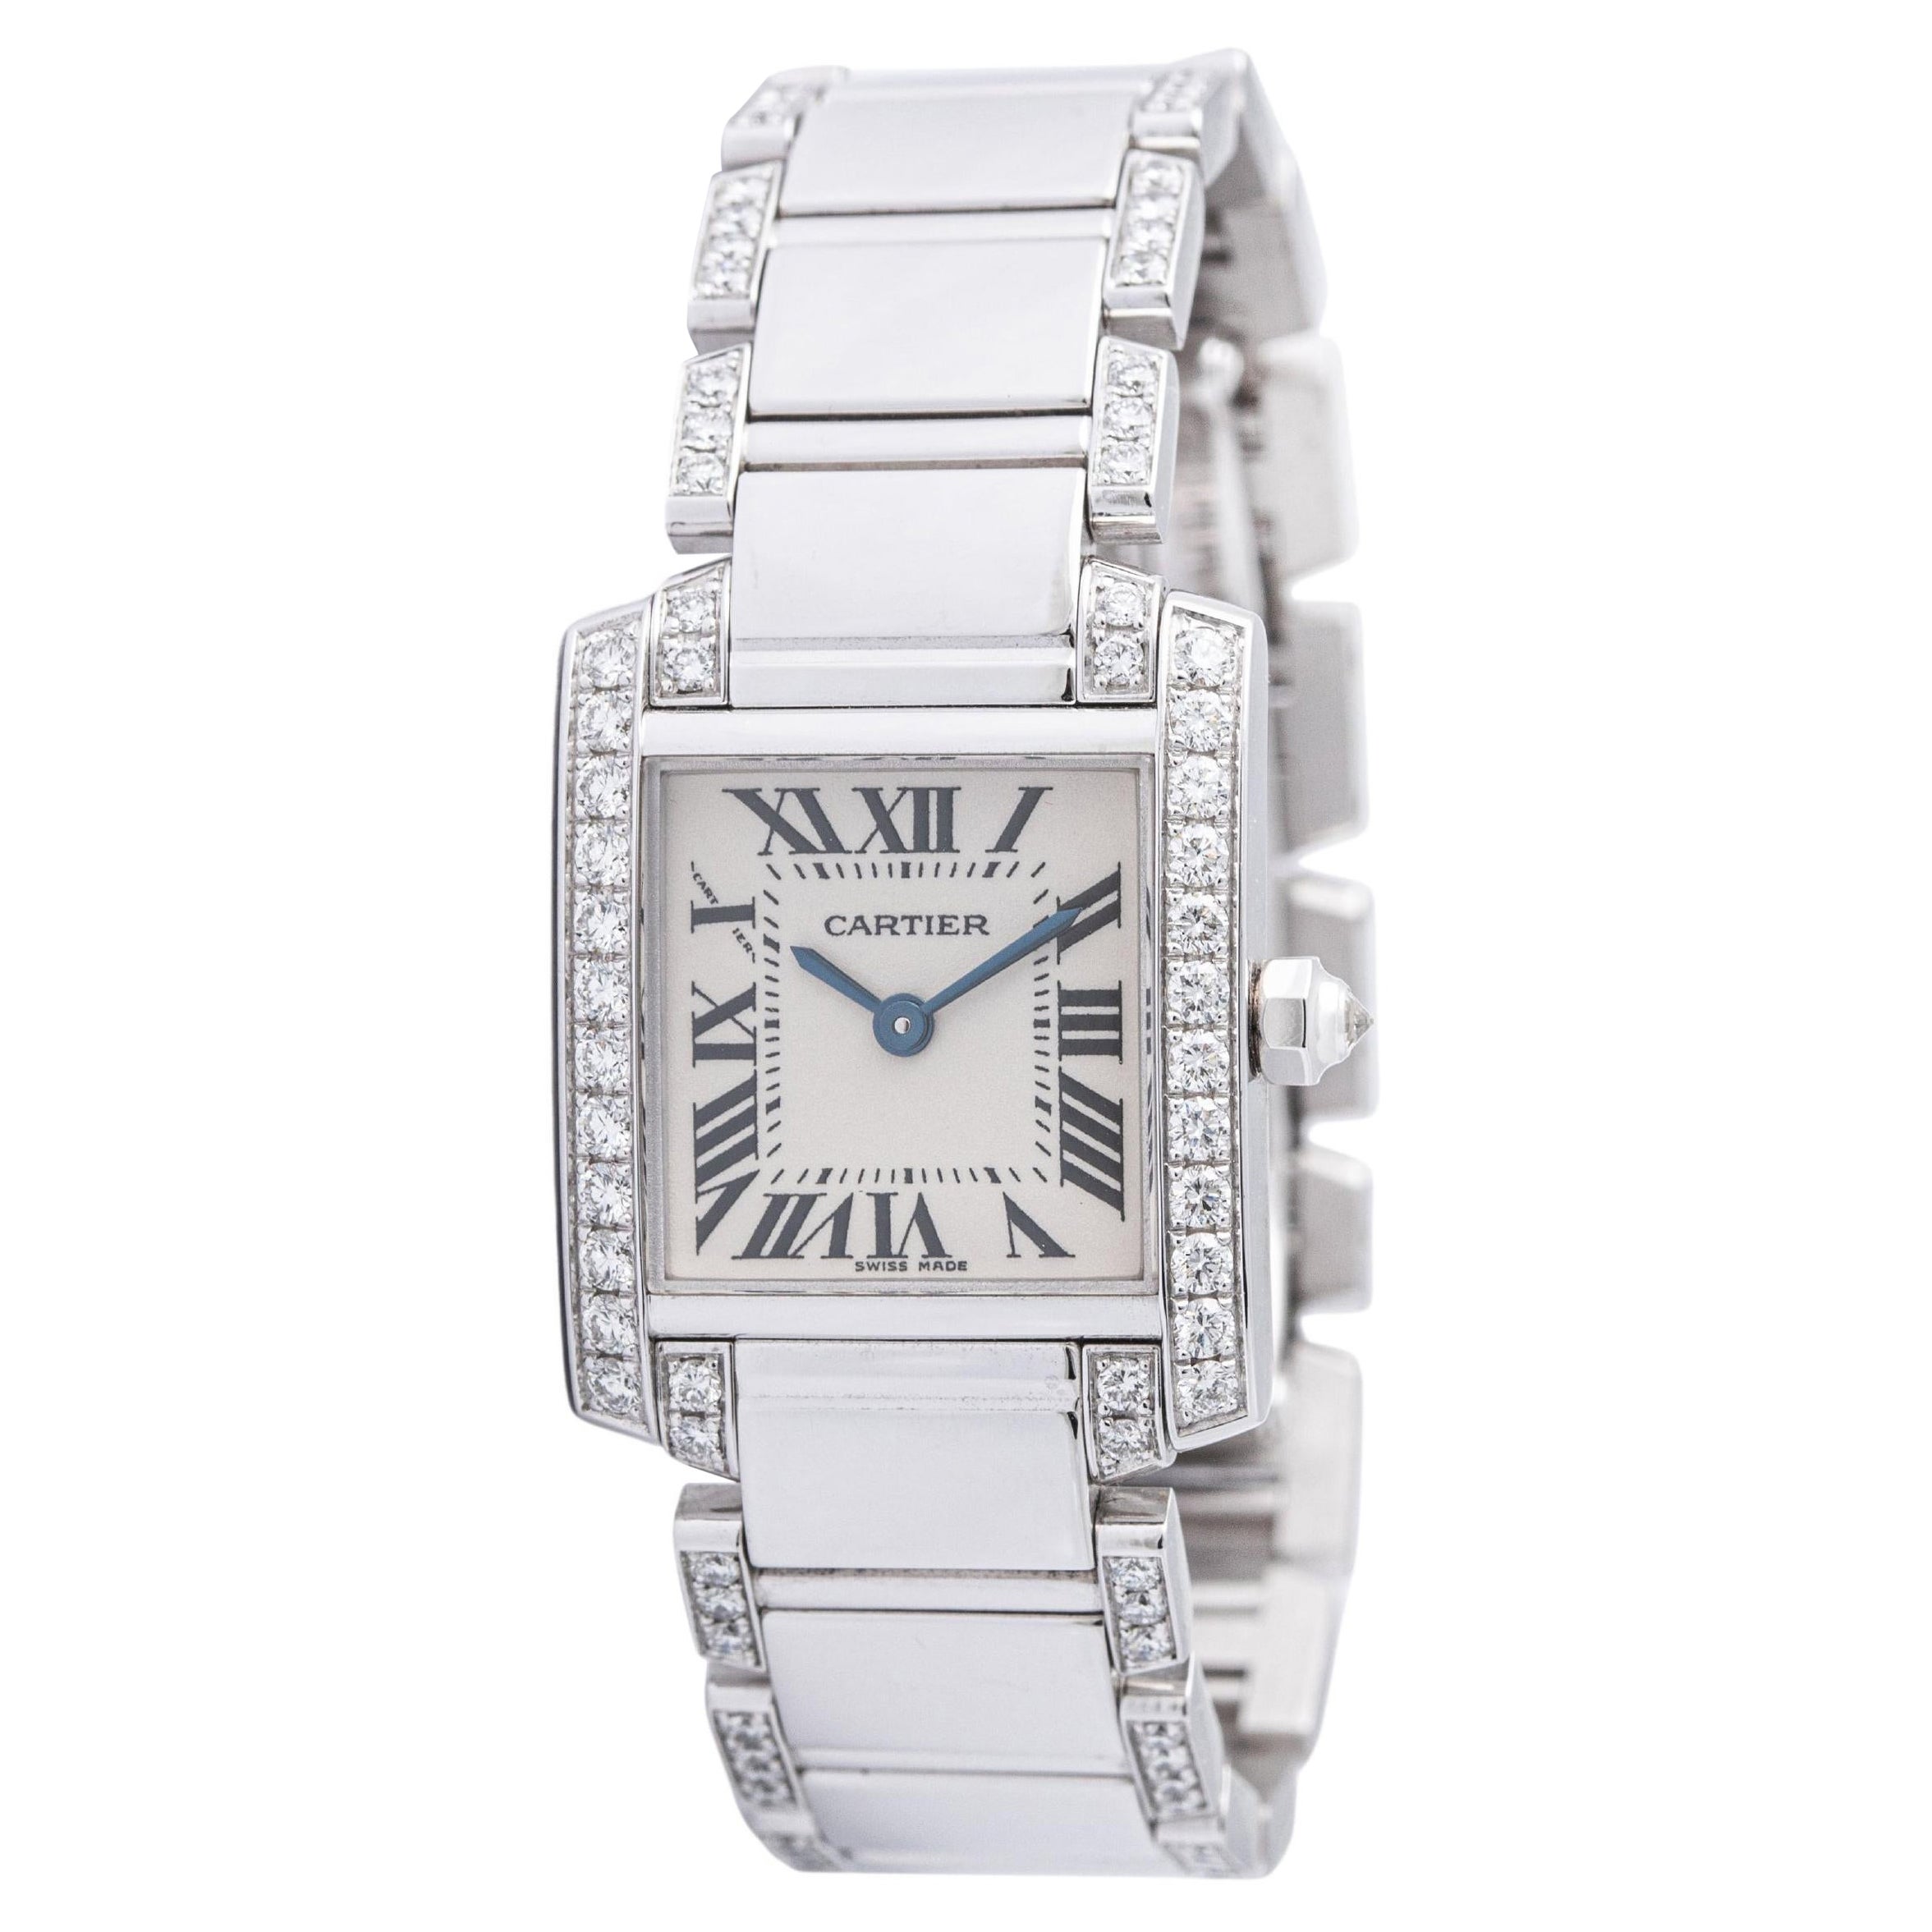 Reloj Cartier 'Tank Francaise' Oro Blanco 18K Diamantes Mujer